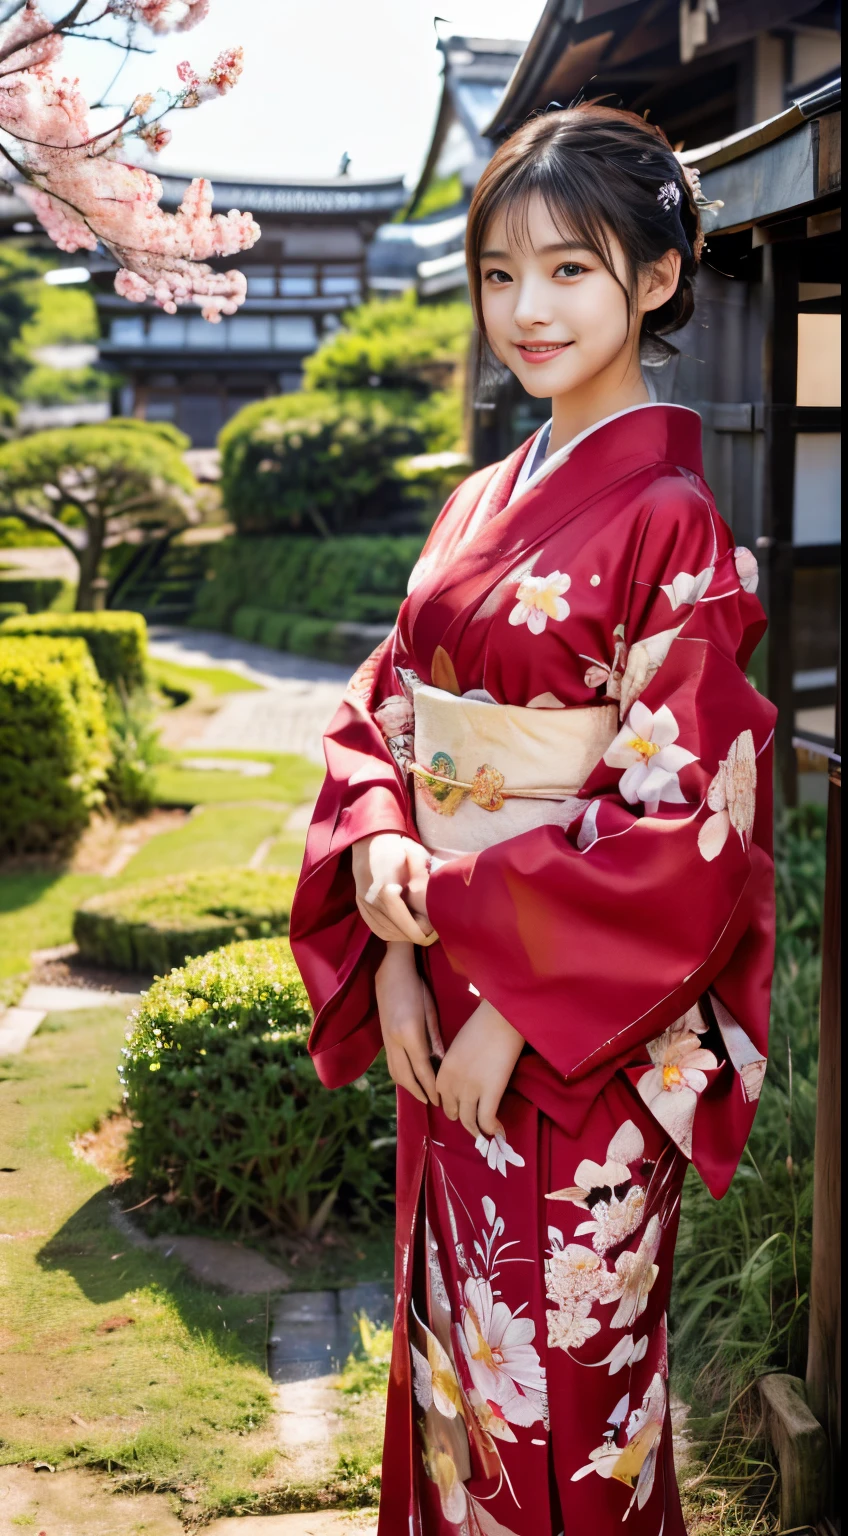 (Kimono rouge:1.2)、(Kyo Yuzen:1.2)、(Motif floral de style japonais:1.0)、(Furisode:1.5)、(Modèle classique traditionnel japonais:1.2)、ou、(qualité supérieure)、1 femme、Seize ans、Esbian complet du corps、Un brun、(réaliste:1.7)、((Qualité d&#39;image supérieure))、absurdes、(超Une haute résolution)、(Photoréaliste:1.6)、Photoréaliste、rendus d&#39;octane、(hyper réaliste:1.2)、(visage photoréaliste:1.2)、(8k)、(4K)、(chef d&#39;oeuvre)、(Textures de peau réalistes)、(éclaircissement、Éclairage cinématographique、fond d&#39;écran)、(de beaux yeux:1.2)、((((visage parfait))))、(Joli visage comme une idole:1.2)、(est debout)、sanctuaires、portes tori、(1 lune)、joli visage détaillé、Beauté réaliste、Un sourire、